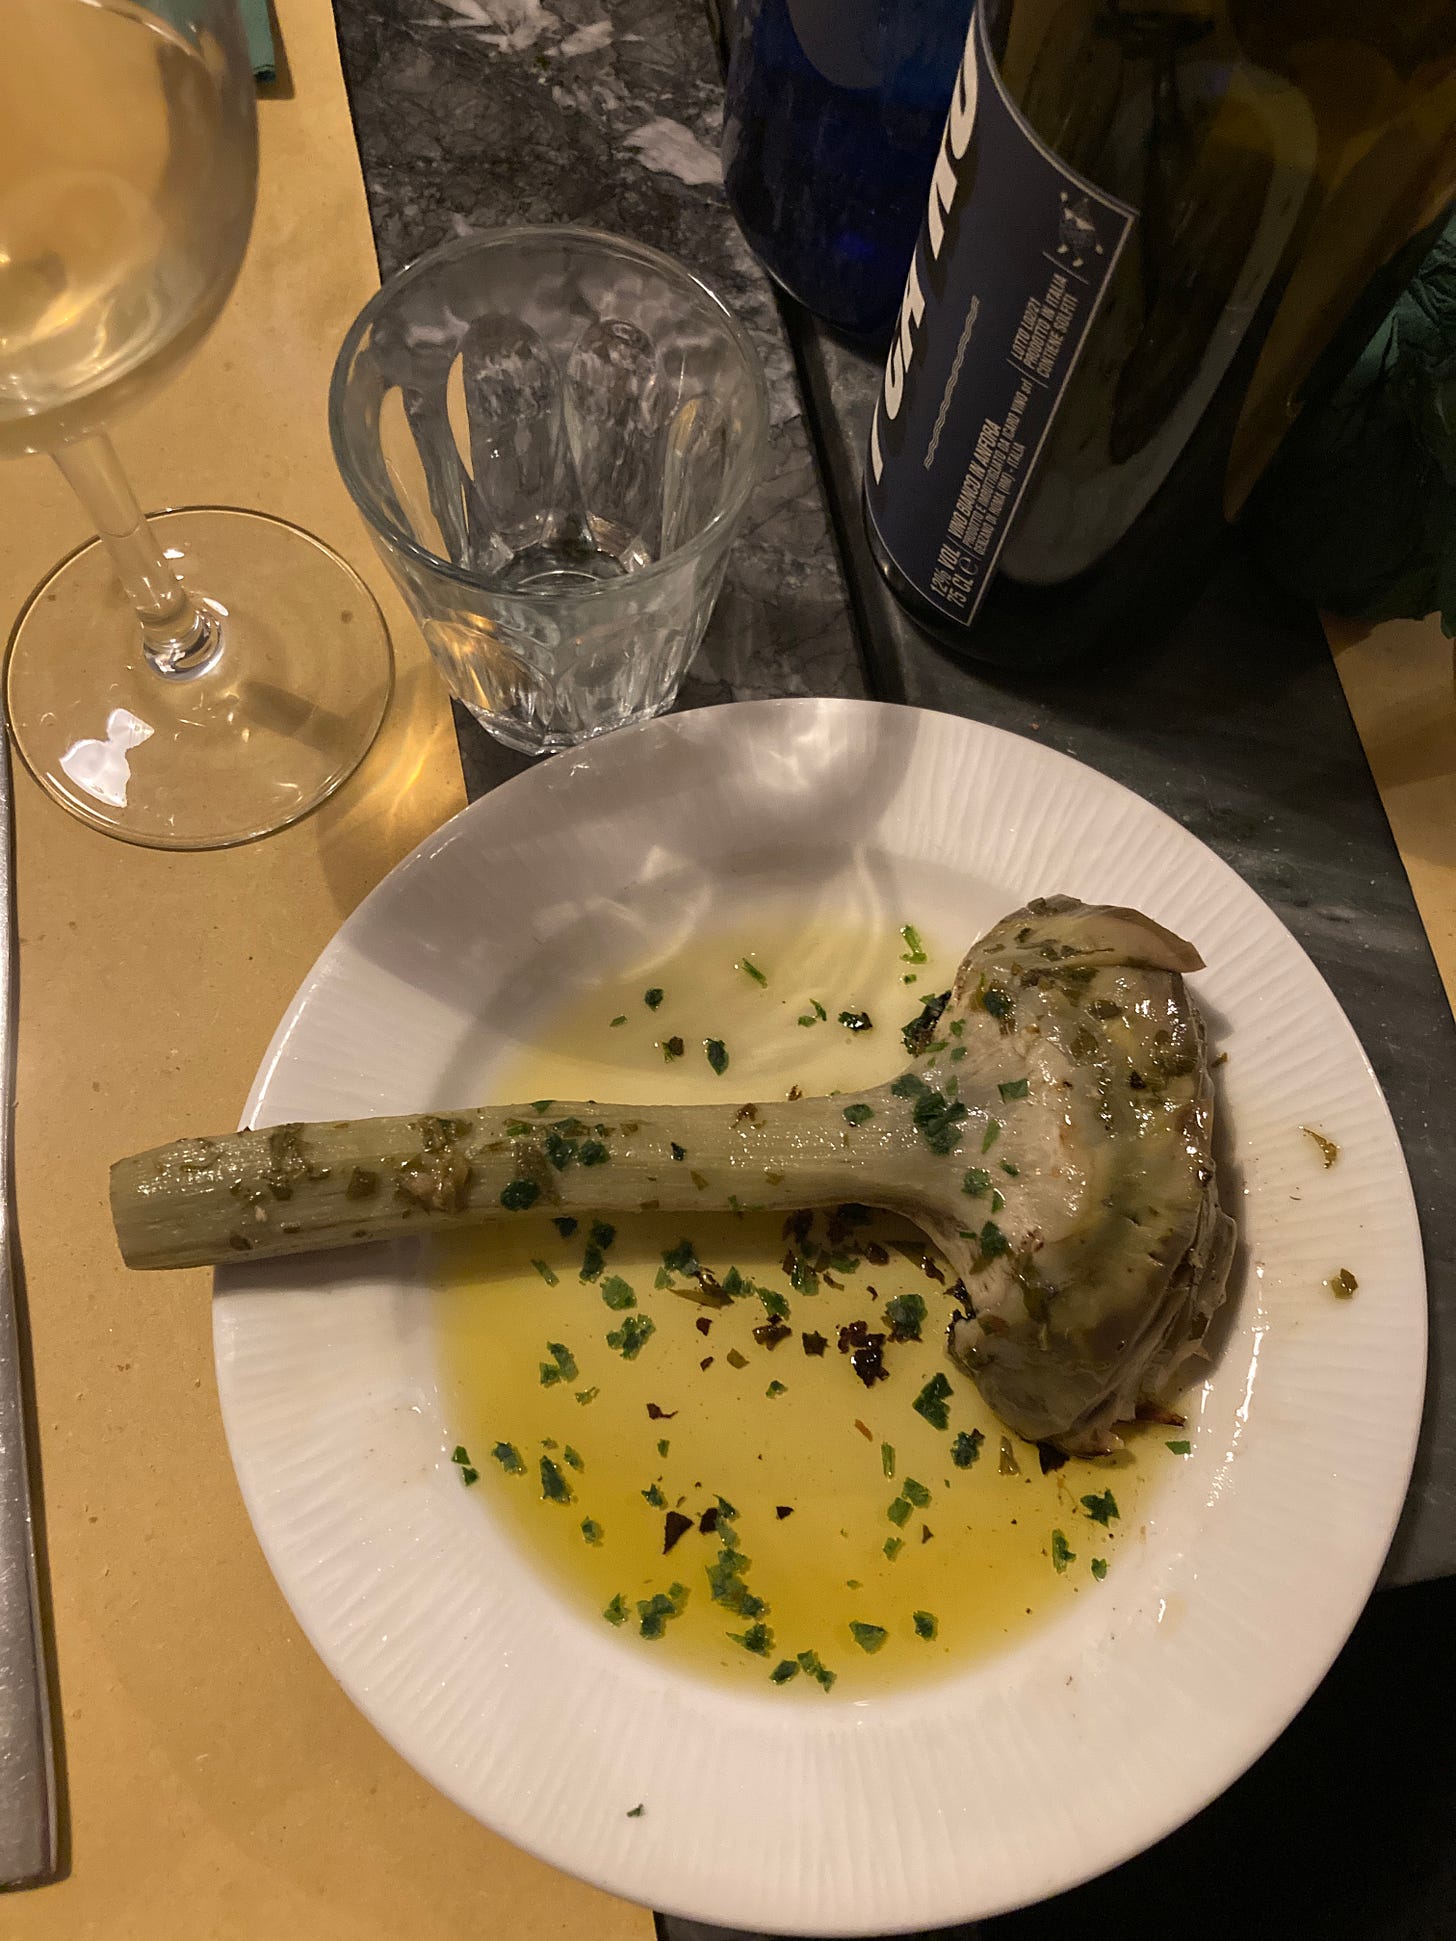 A Roman-style artichoke in olive oil